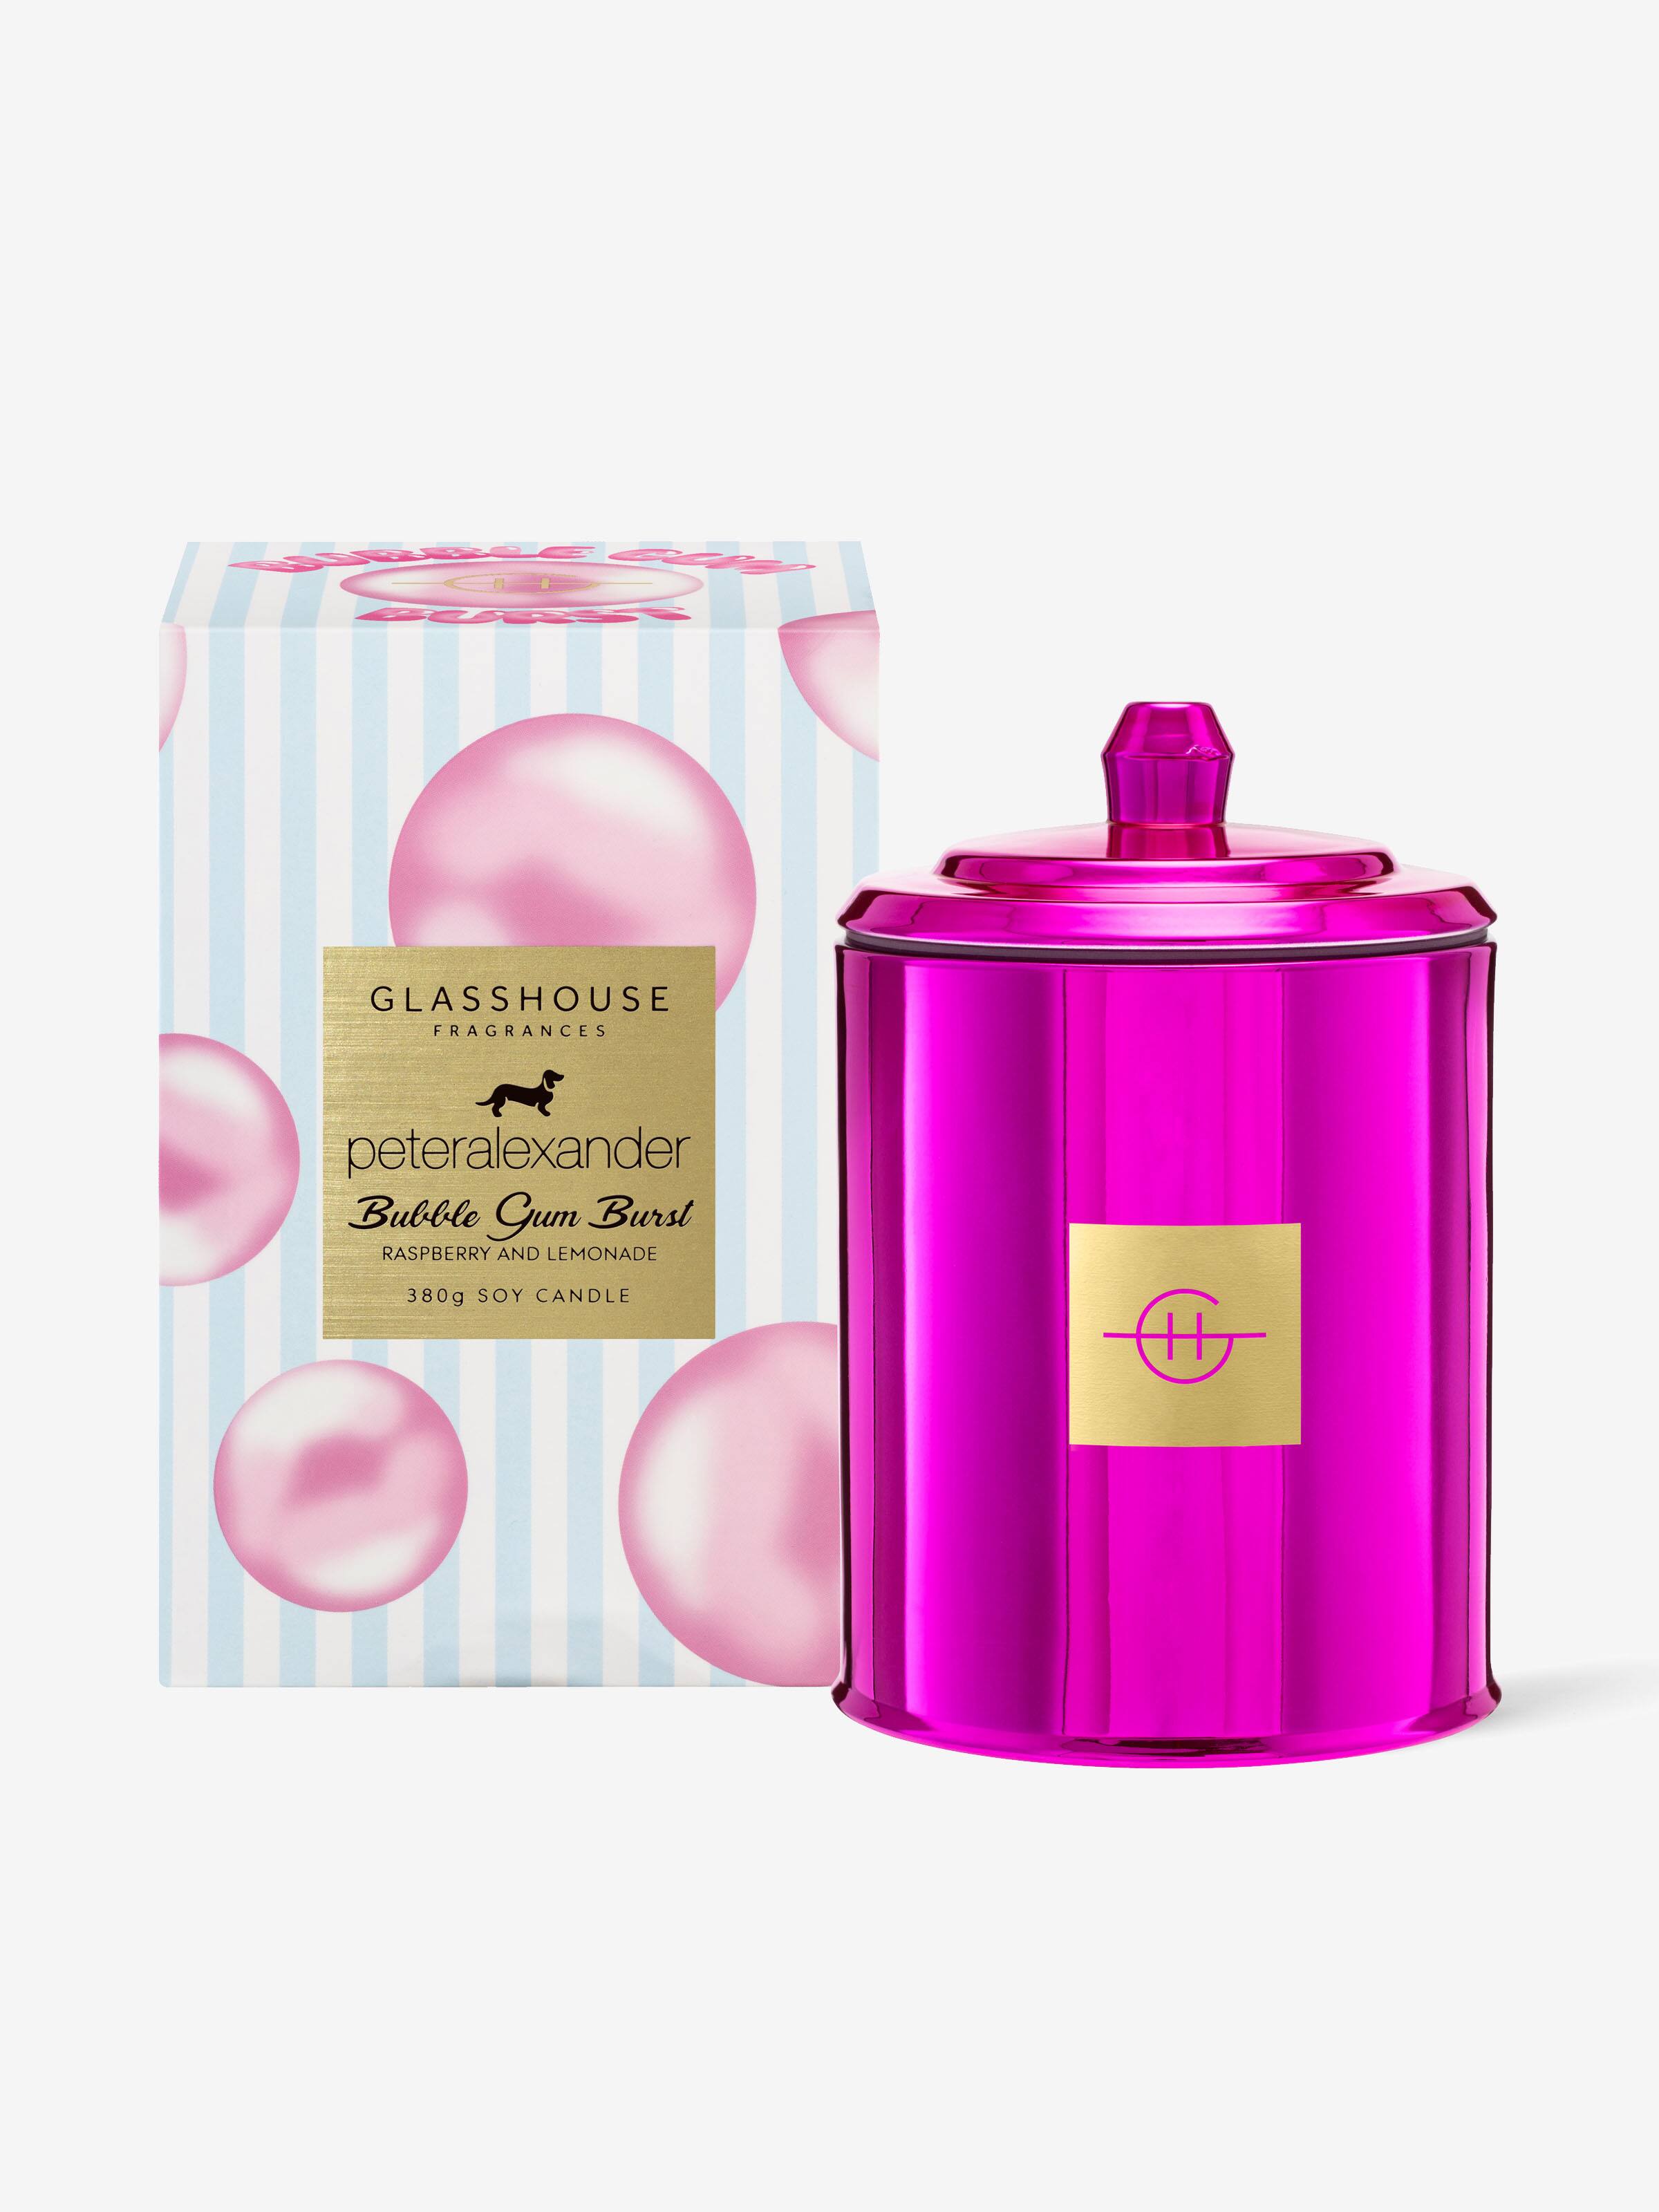 Glasshouse Fragrances Limited Edition Bubble Gum Burst 380G Candle